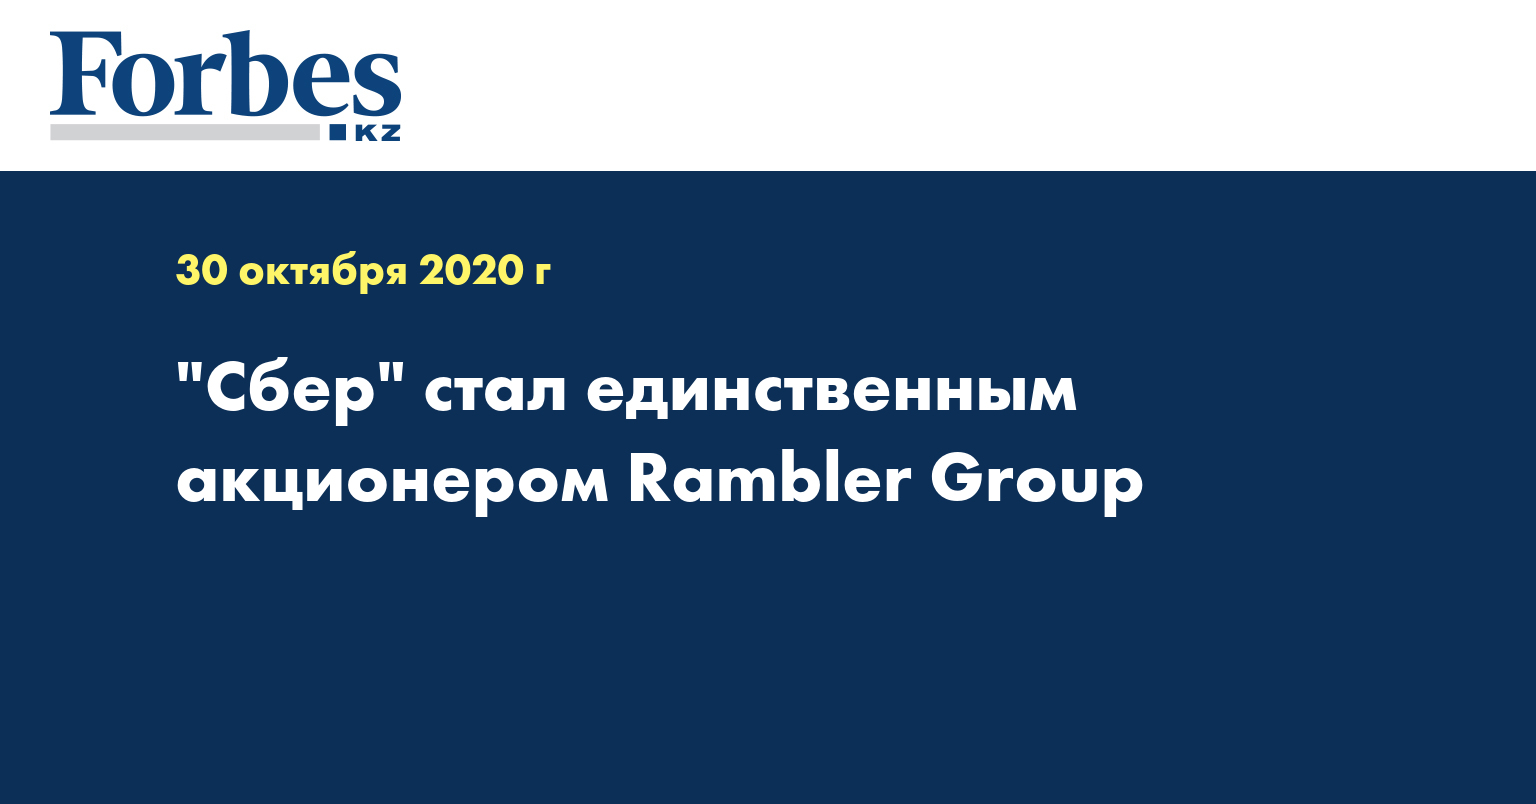 Сбер стал единственным акционером Rambler Group